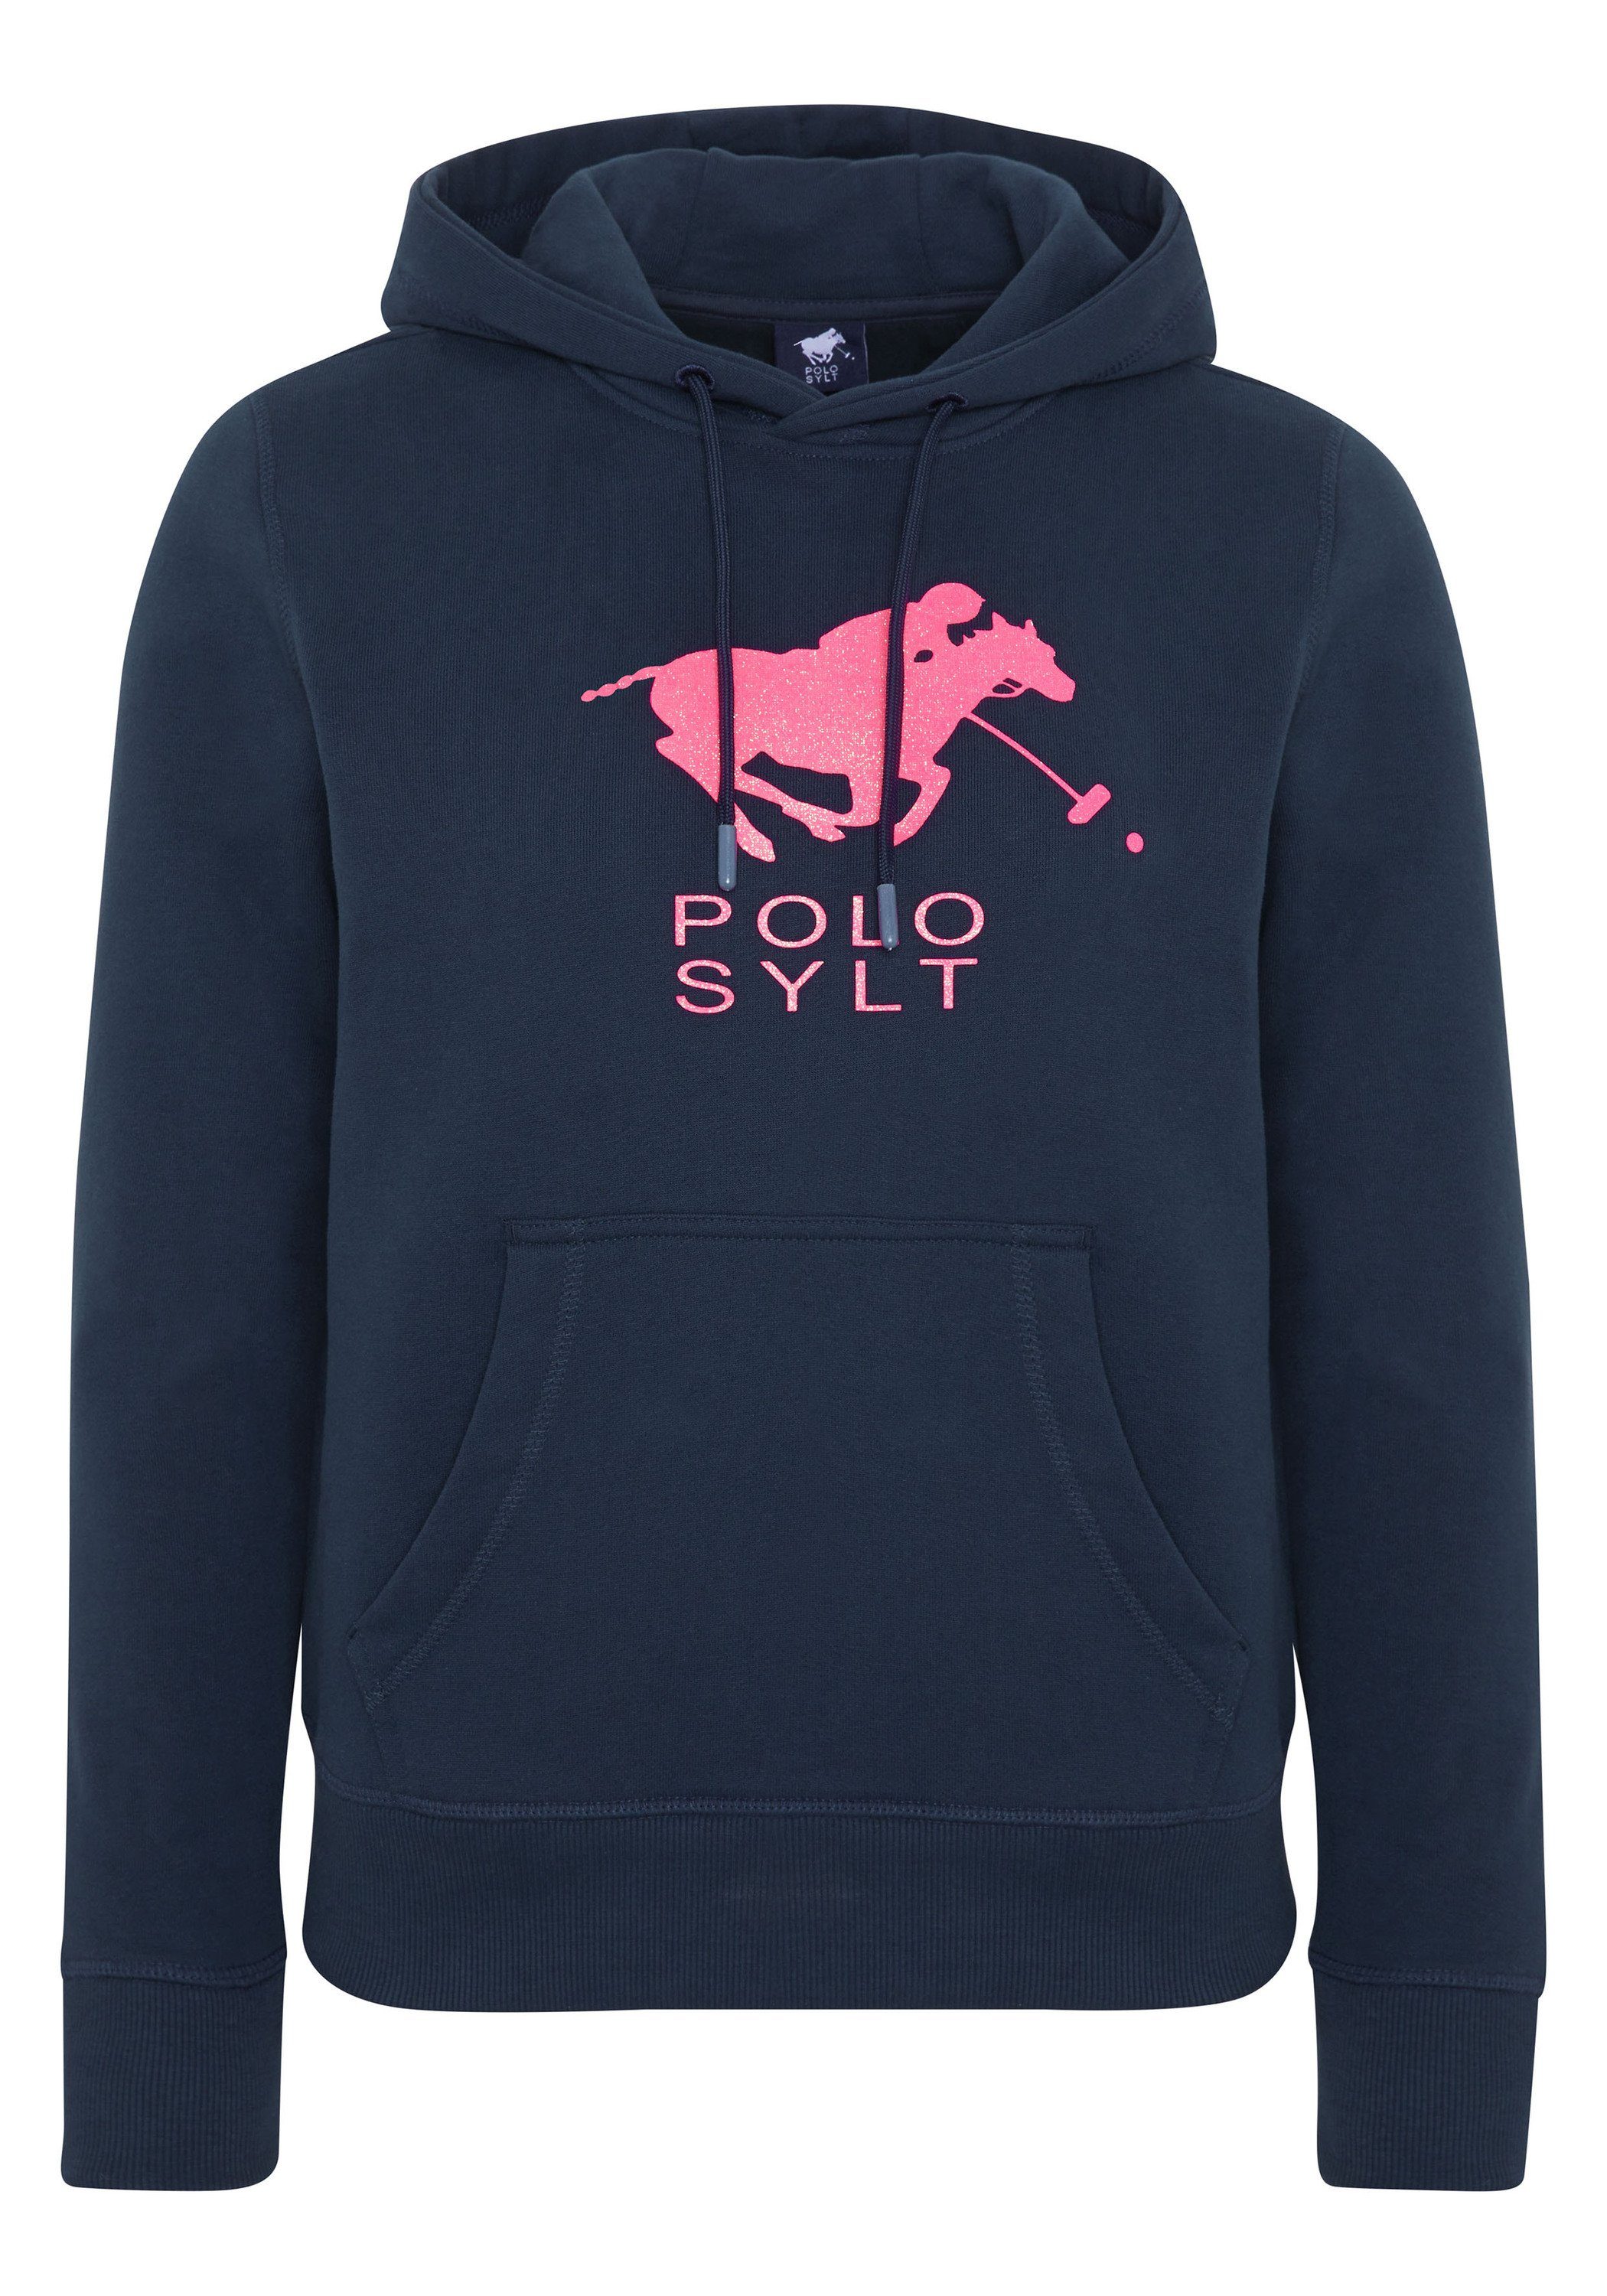 Polo Sylt Kapuzensweatshirt mit Polo Sylt Frontprint Total Eclipse